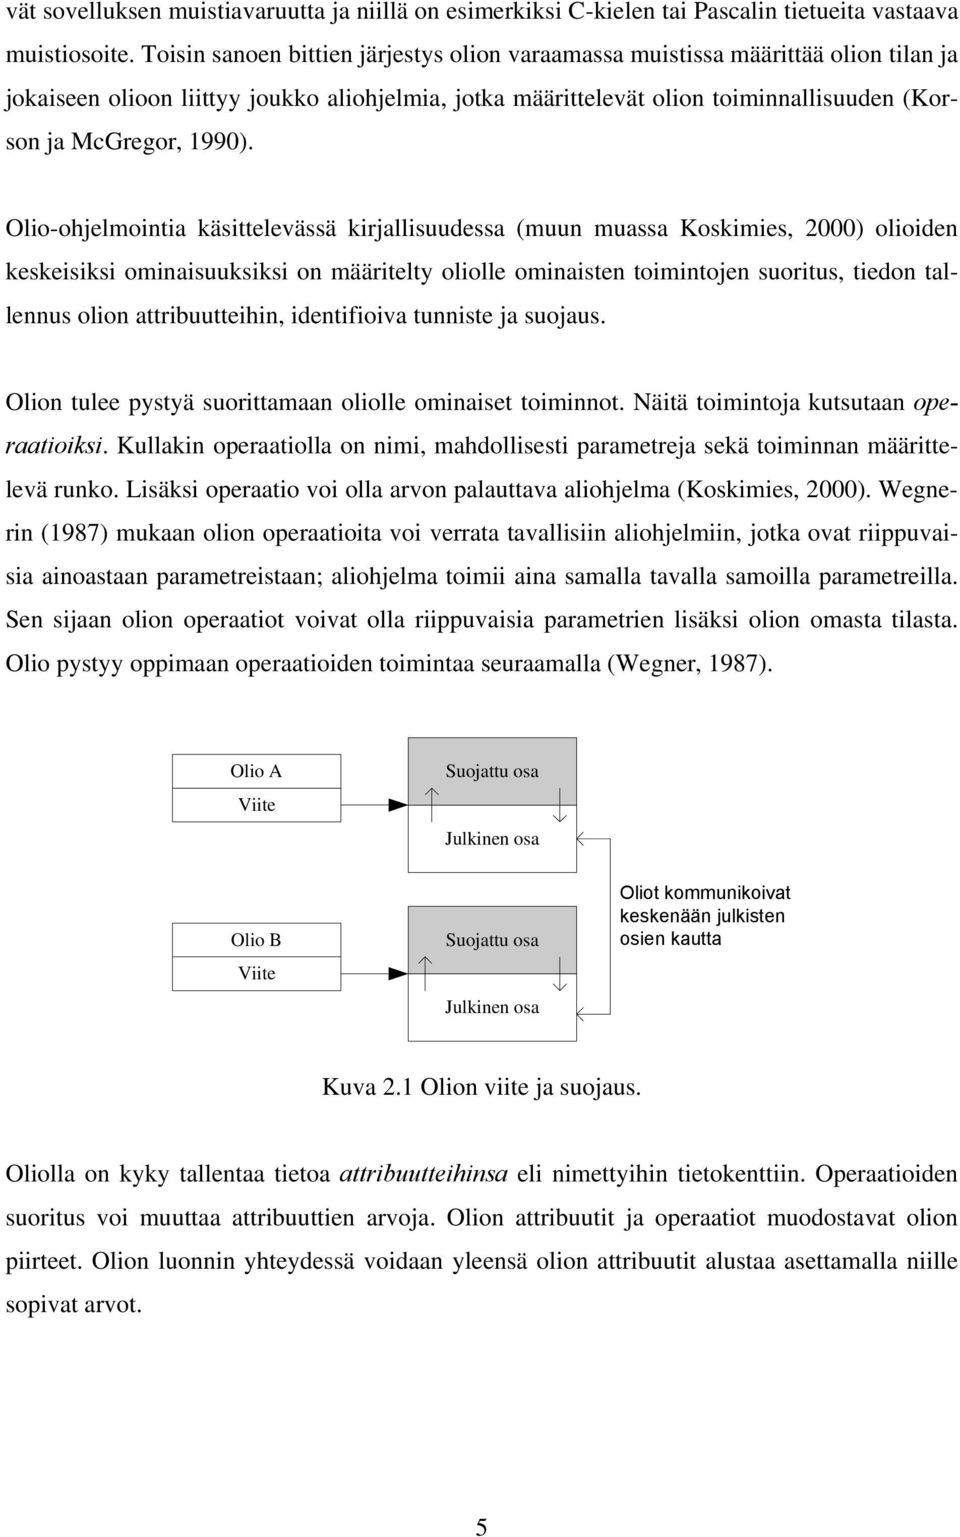 Olio-ohjelmointia käsittelevässä kirjallisuudessa (muun muassa Koskimies, 2000) olioiden keskeisiksi ominaisuuksiksi on määritelty oliolle ominaisten toimintojen suoritus, tiedon tallennus olion